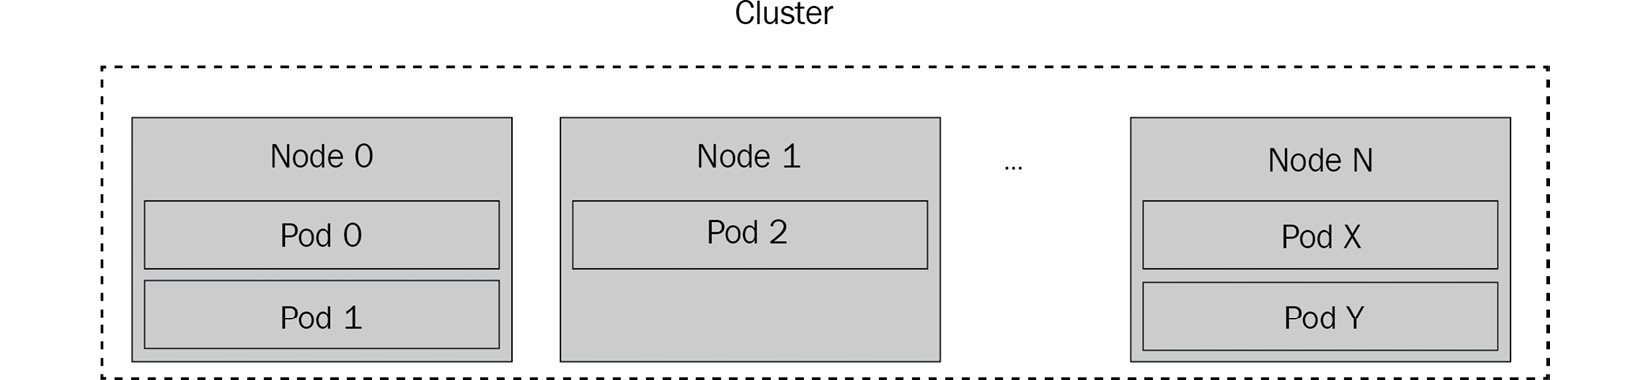 Figure 8.2 – Kubernetes cluster model
